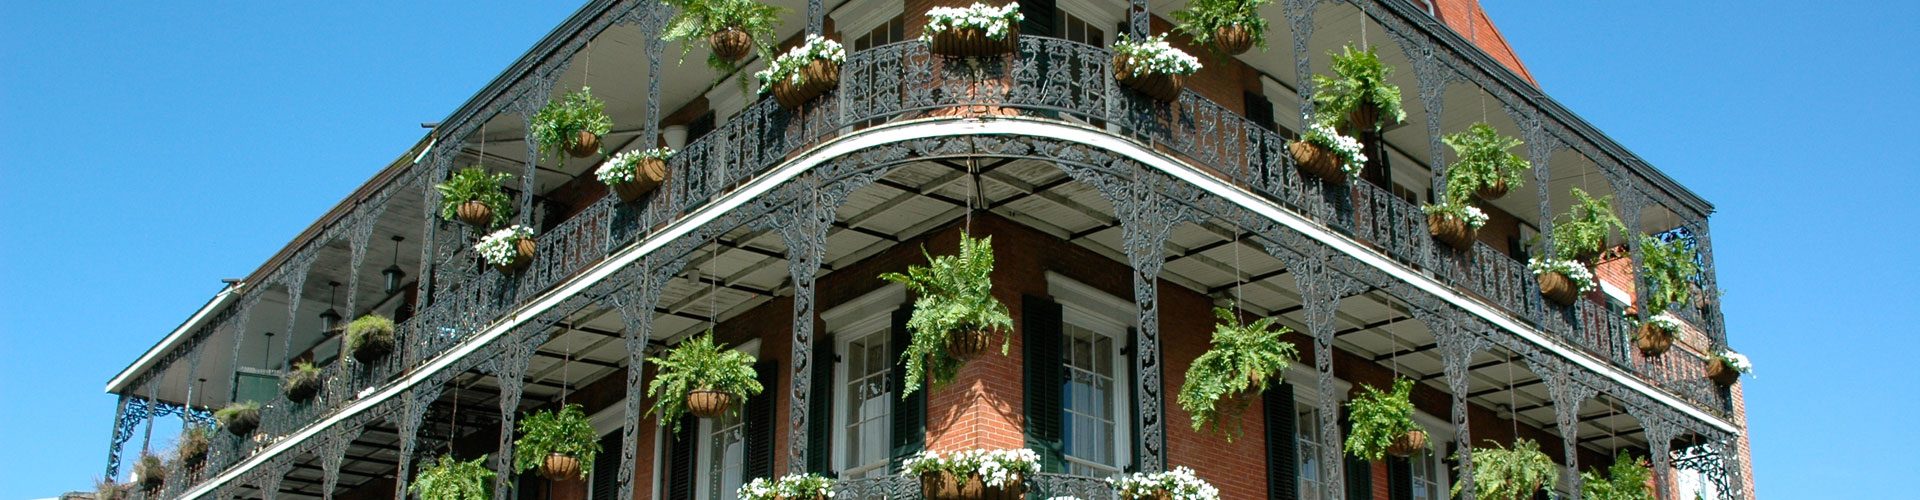 Die schmiedeeisernen Balkone des French Qurater, New Orleans